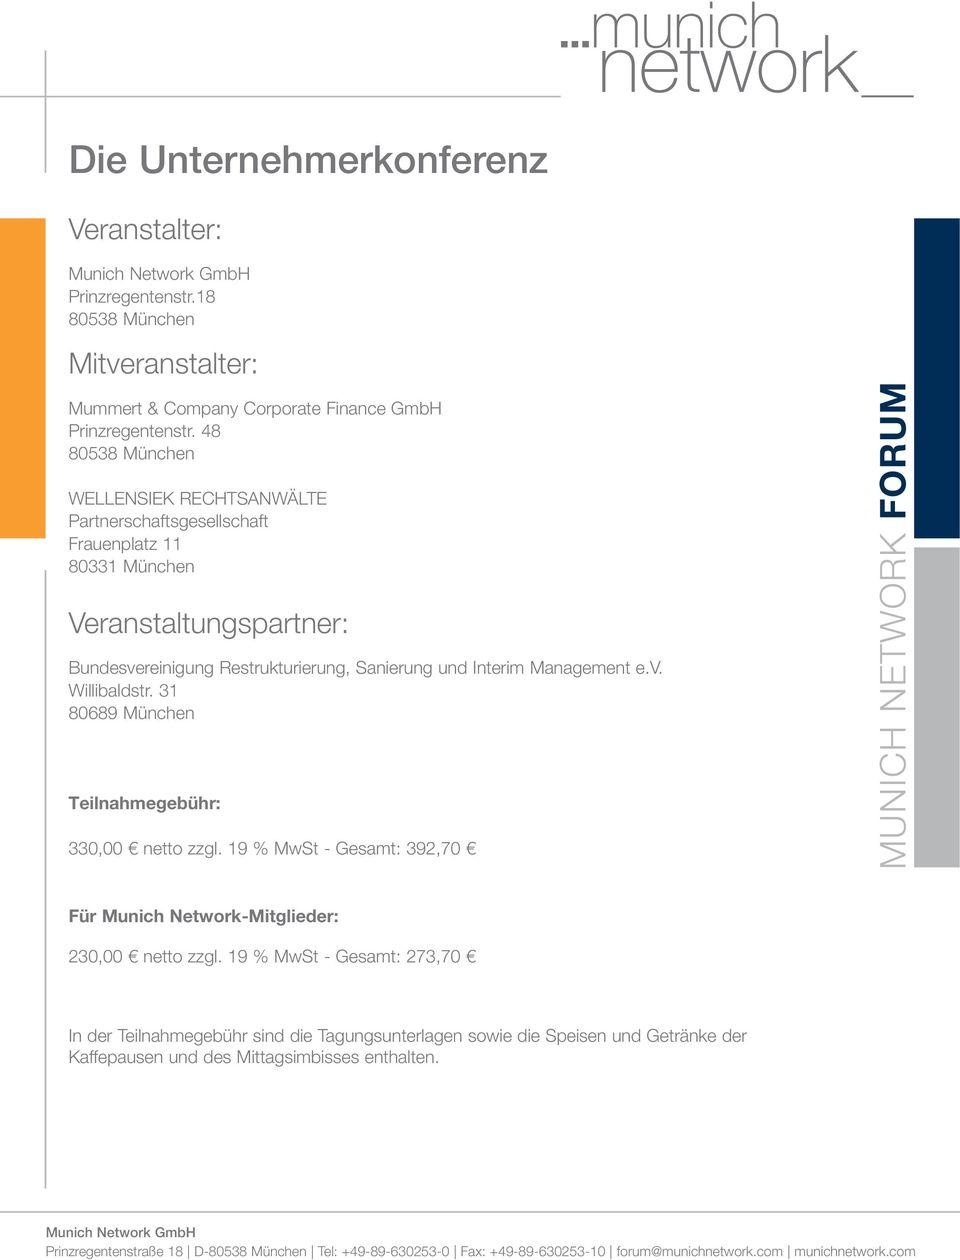 Sanierung und Interim Management e.v. Willibaldstr. 31 80689 München Teilnahmegebühr: 330,00 netto zzgl.